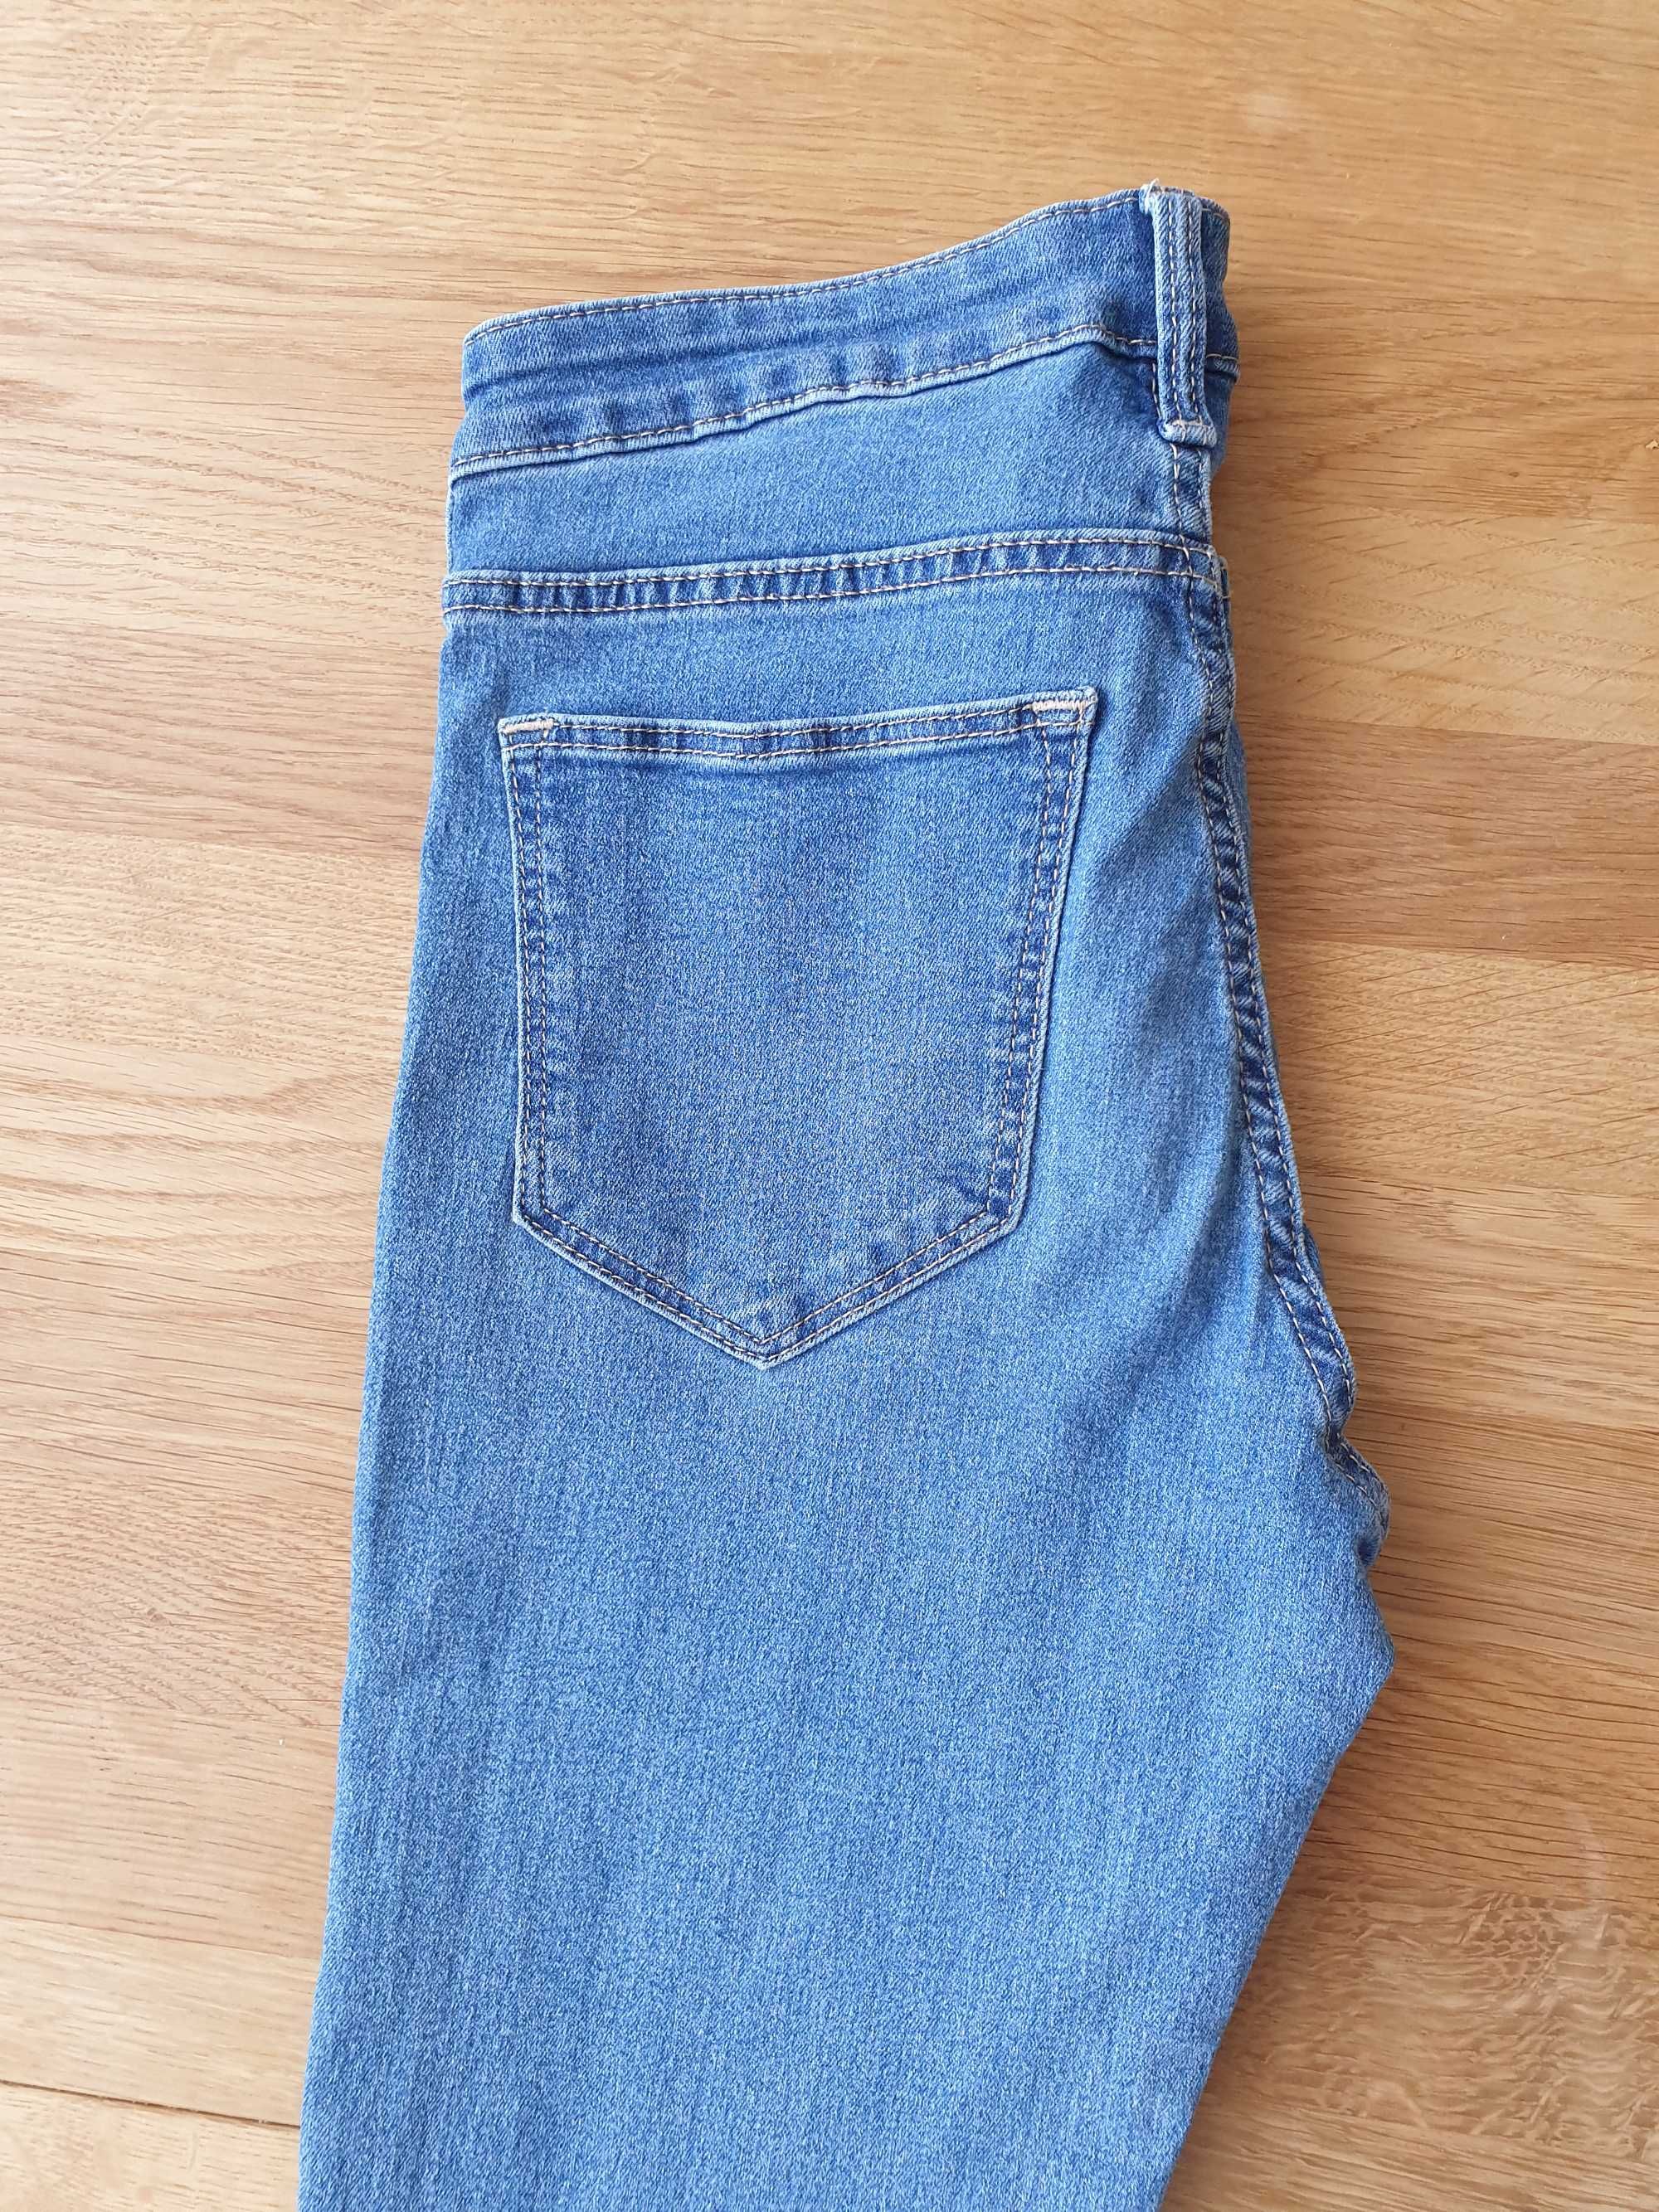 Jeansy dżinsy spodnie jeansowe rurki skinny jeans H&M XS S